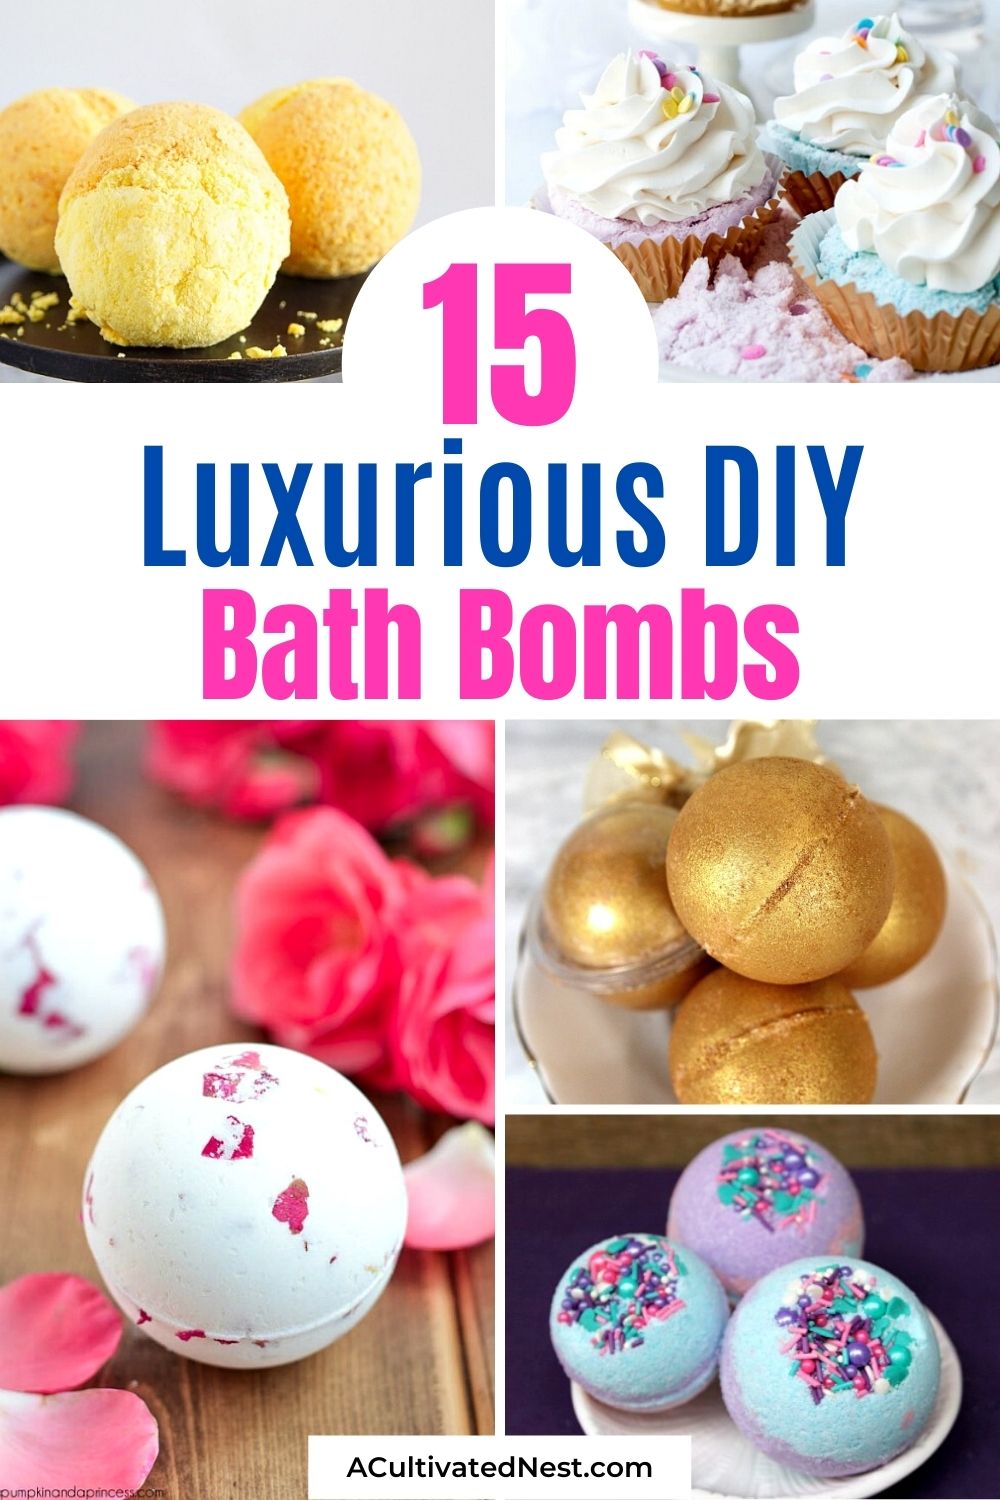 15 Luxurious DIY Bath Bombs